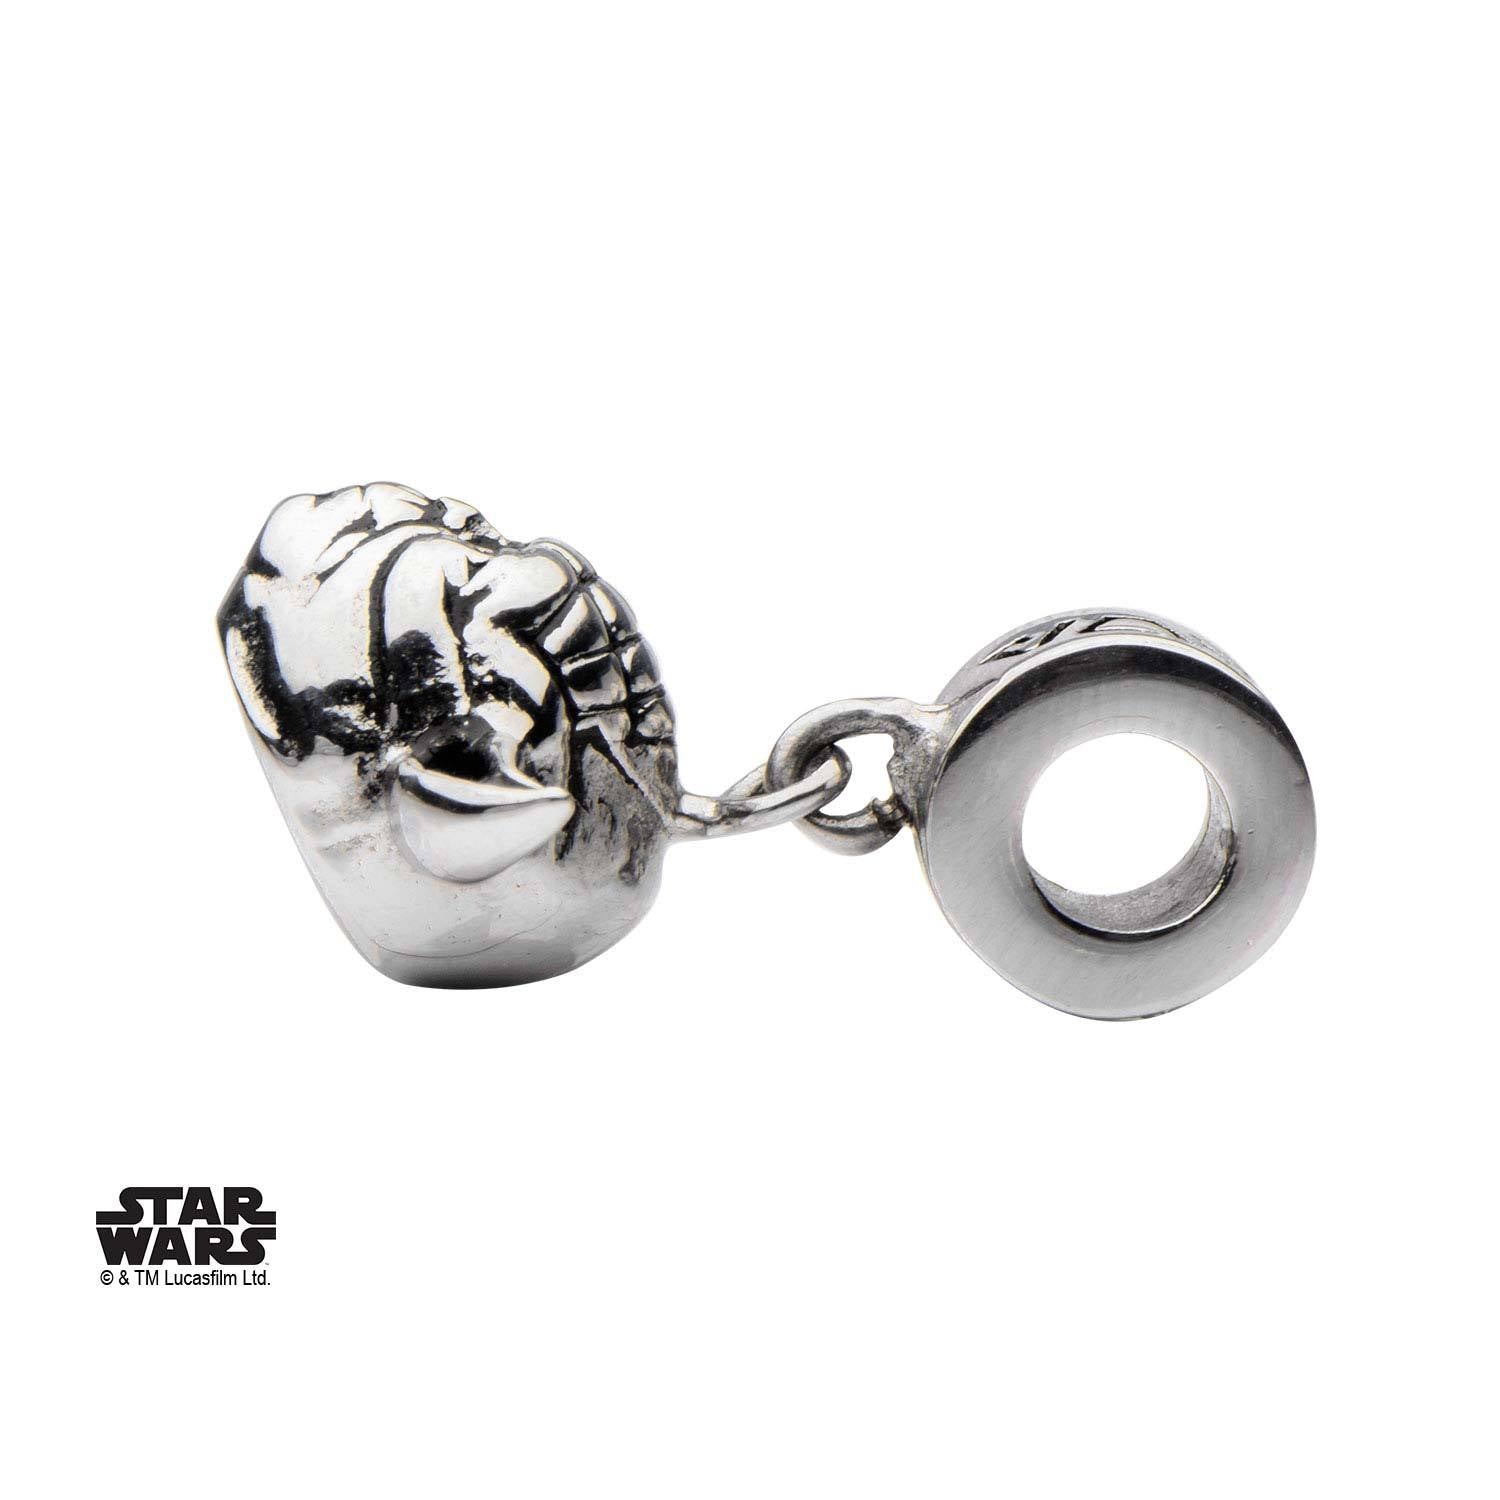 Star Wars Yoda Head Dangle Charm